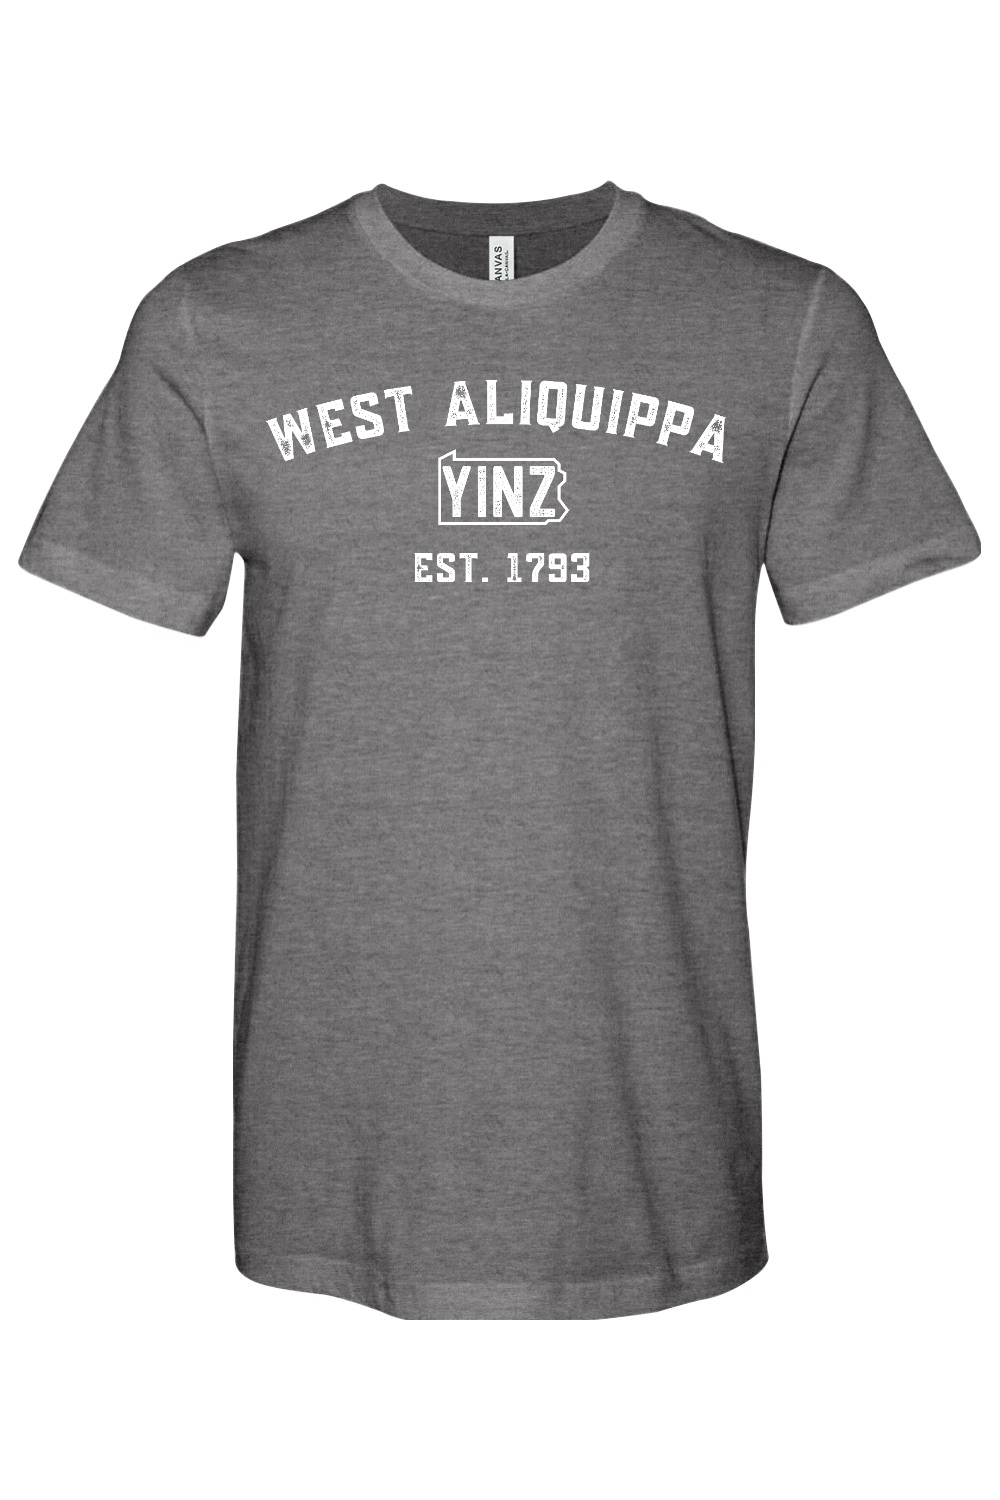 West Aliquippa Yinzylvania - Yinzylvania